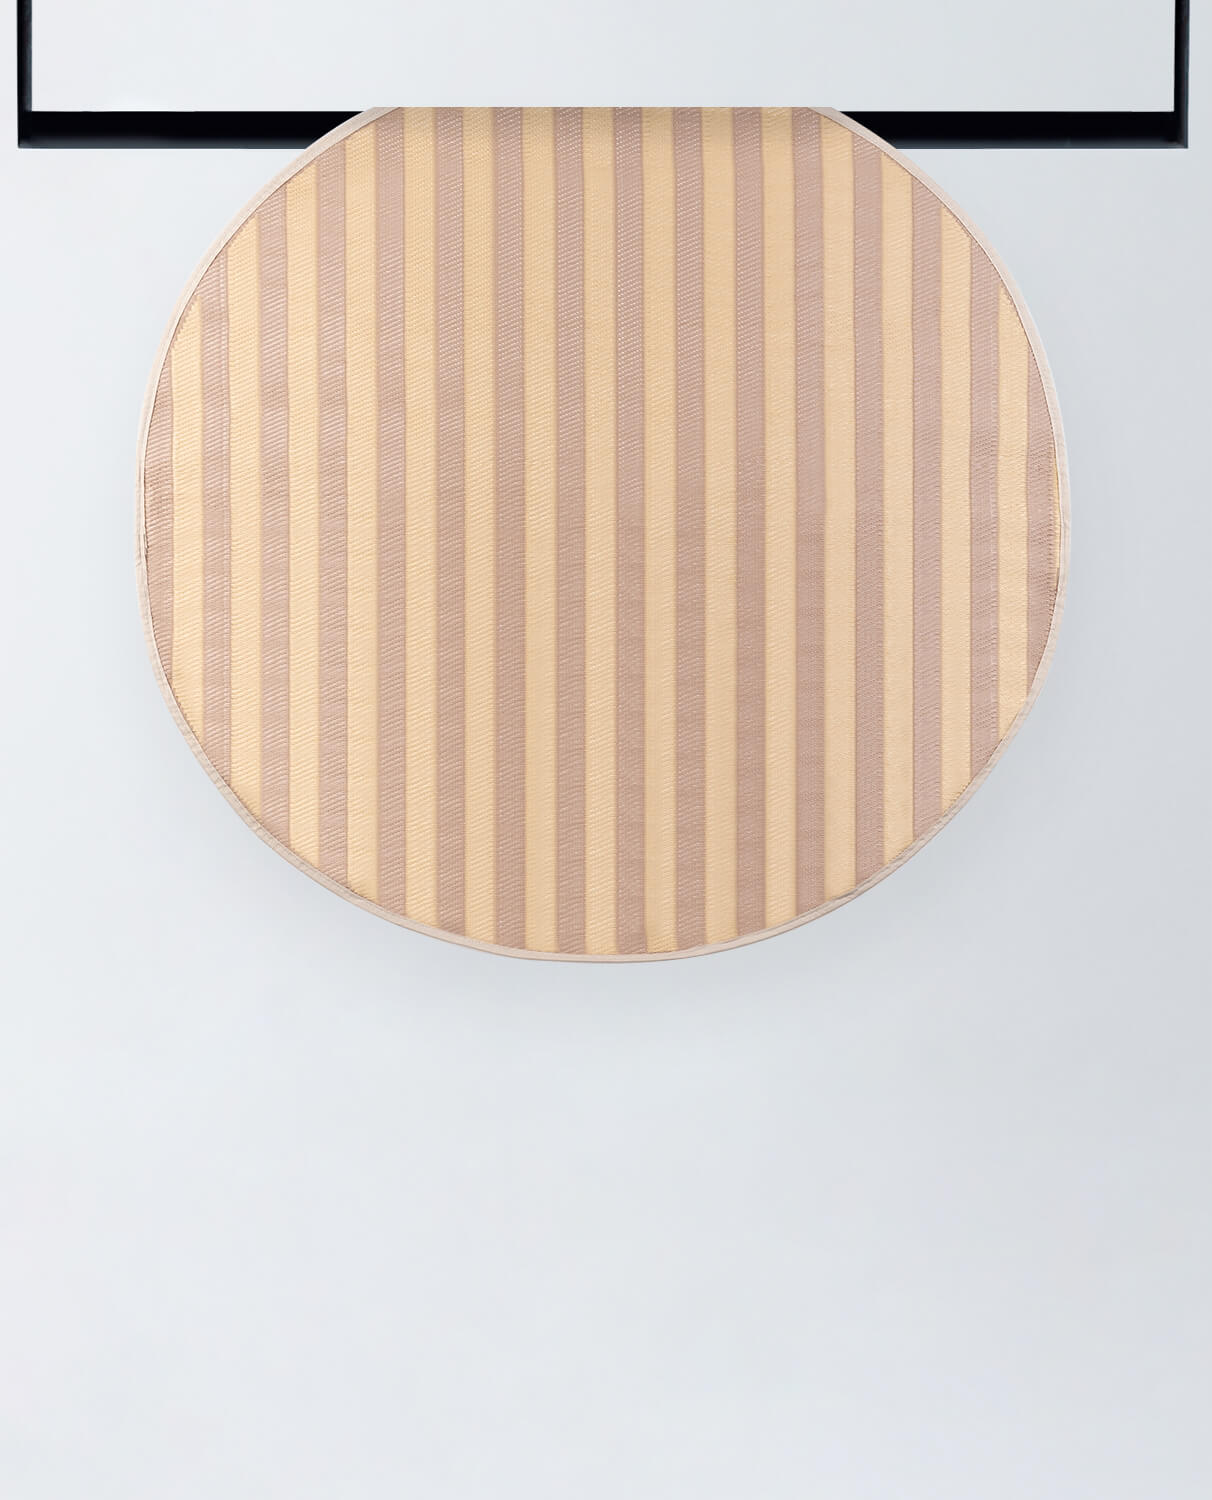 Tappeto da esterno rotondo in polipropilene (Ø149 cm) Cierzo, immagine della galleria 1